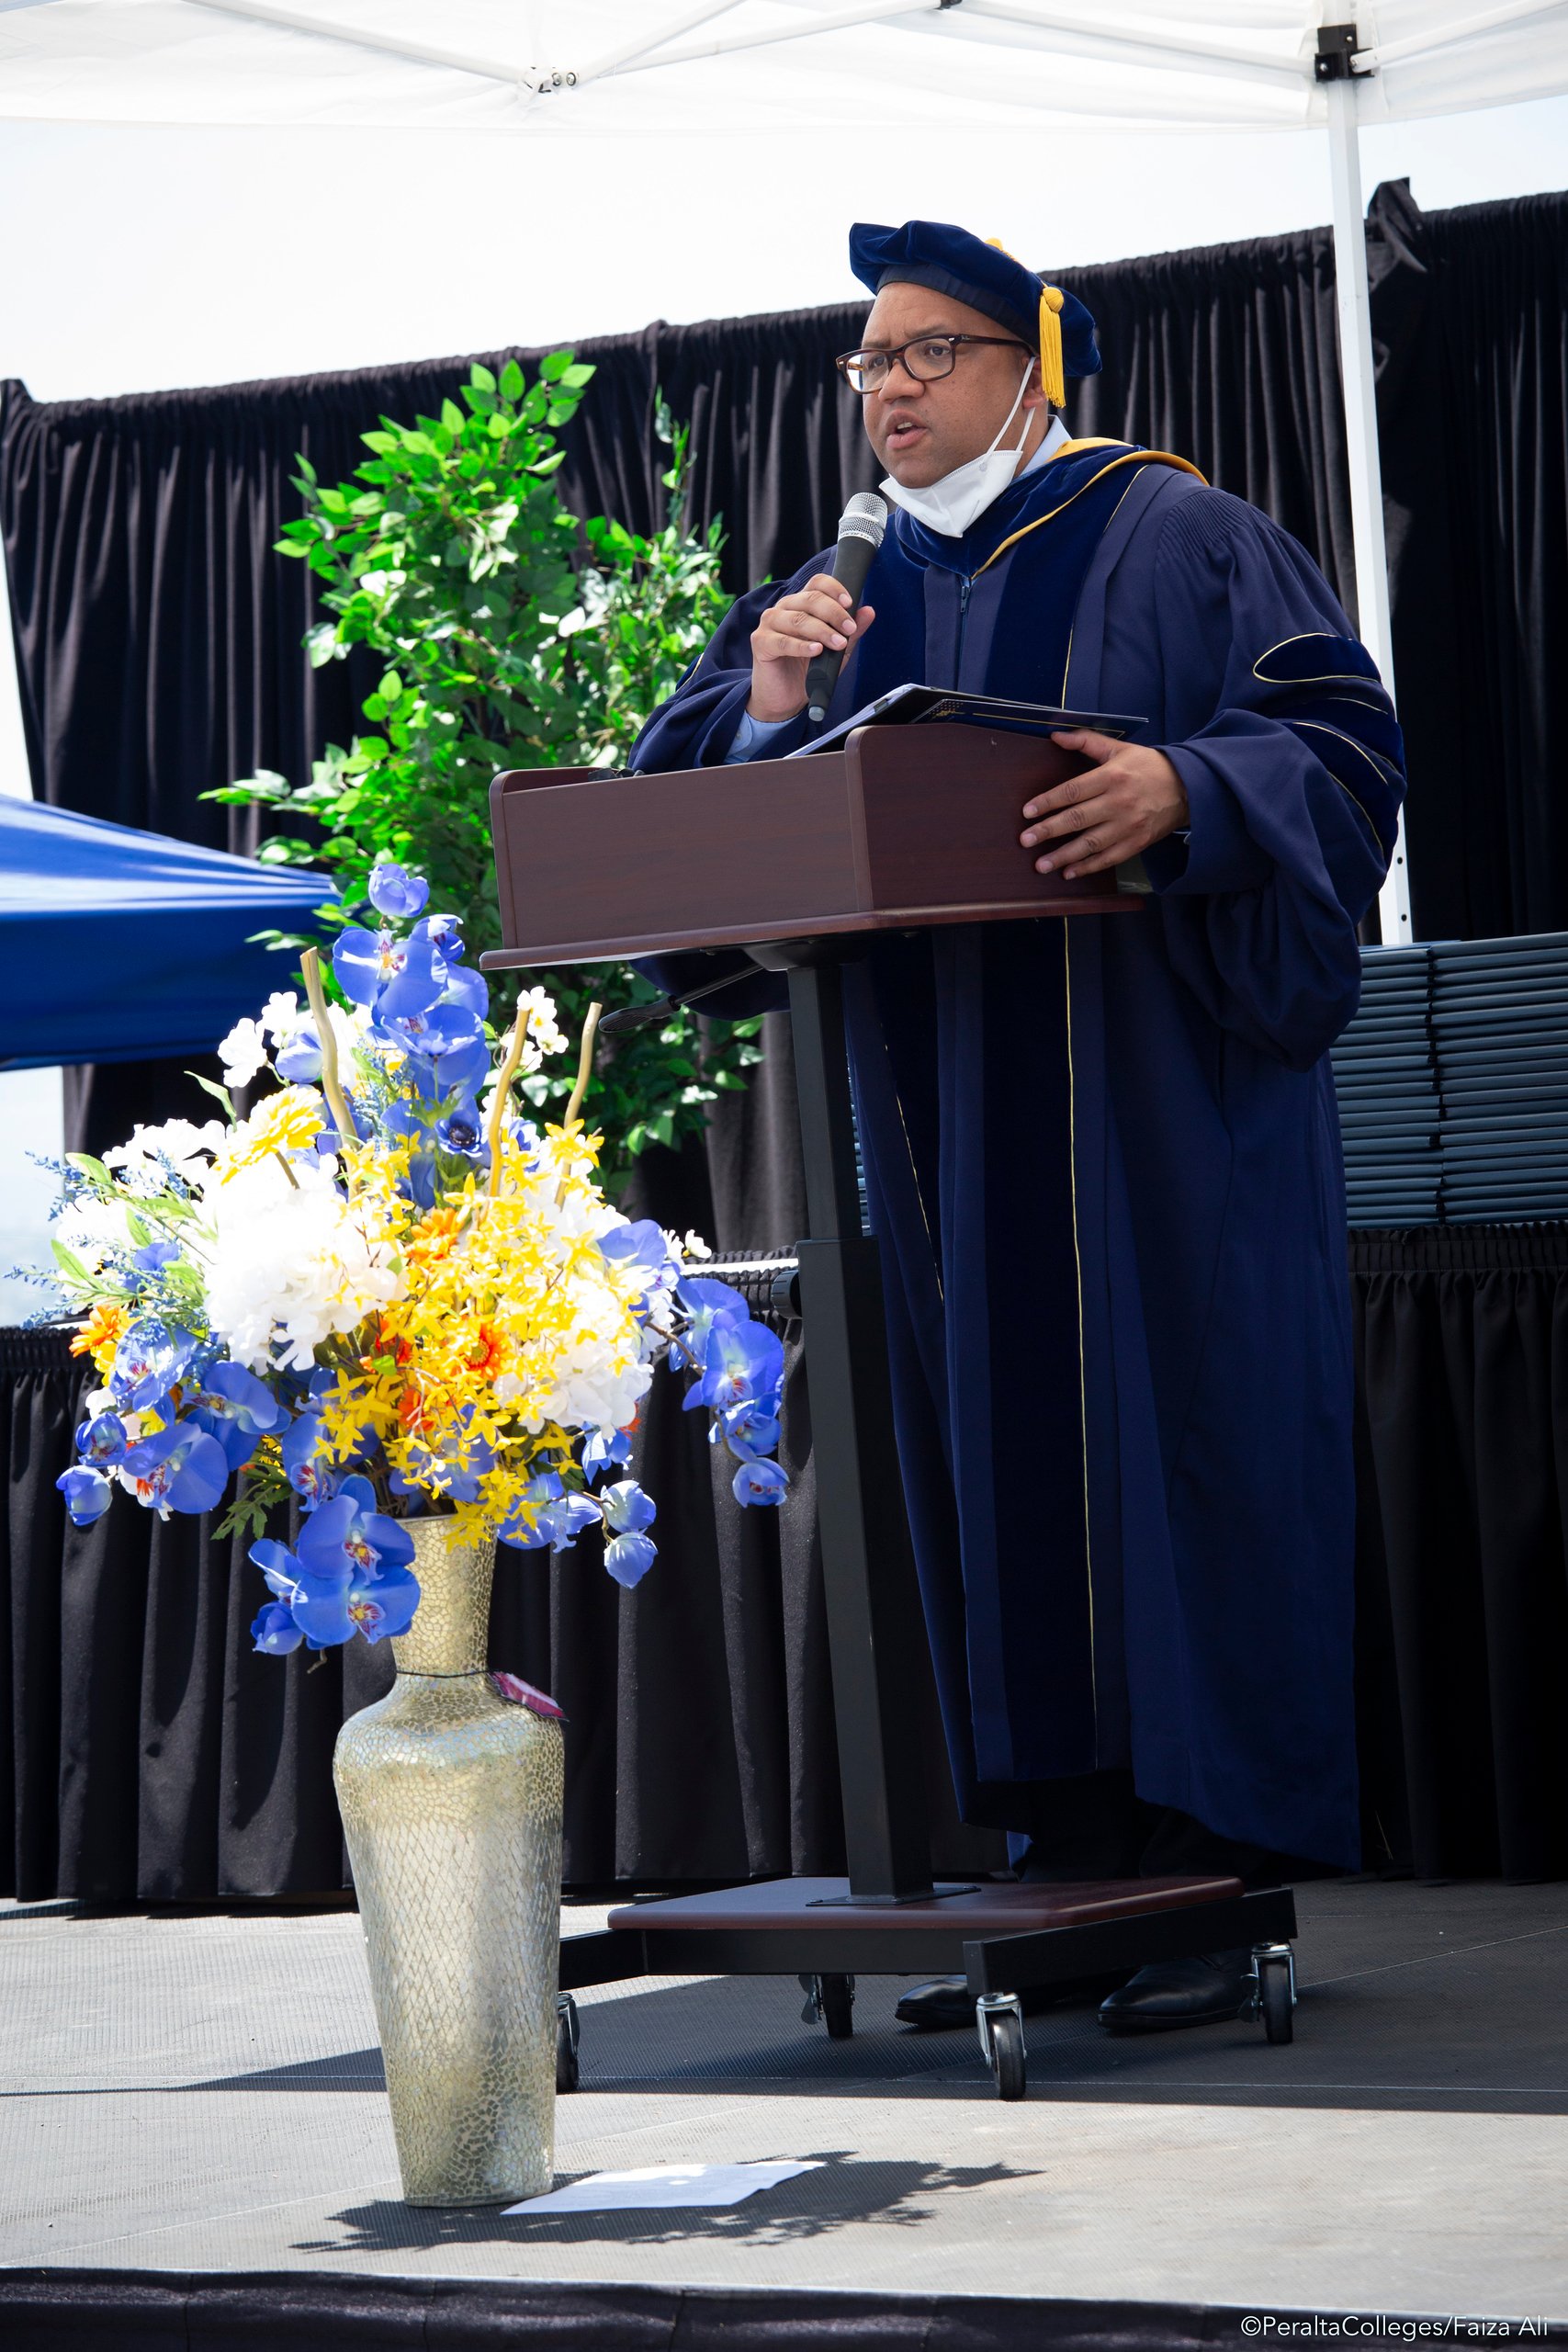 Merritt graduation Pres Johnson congratulates graduates